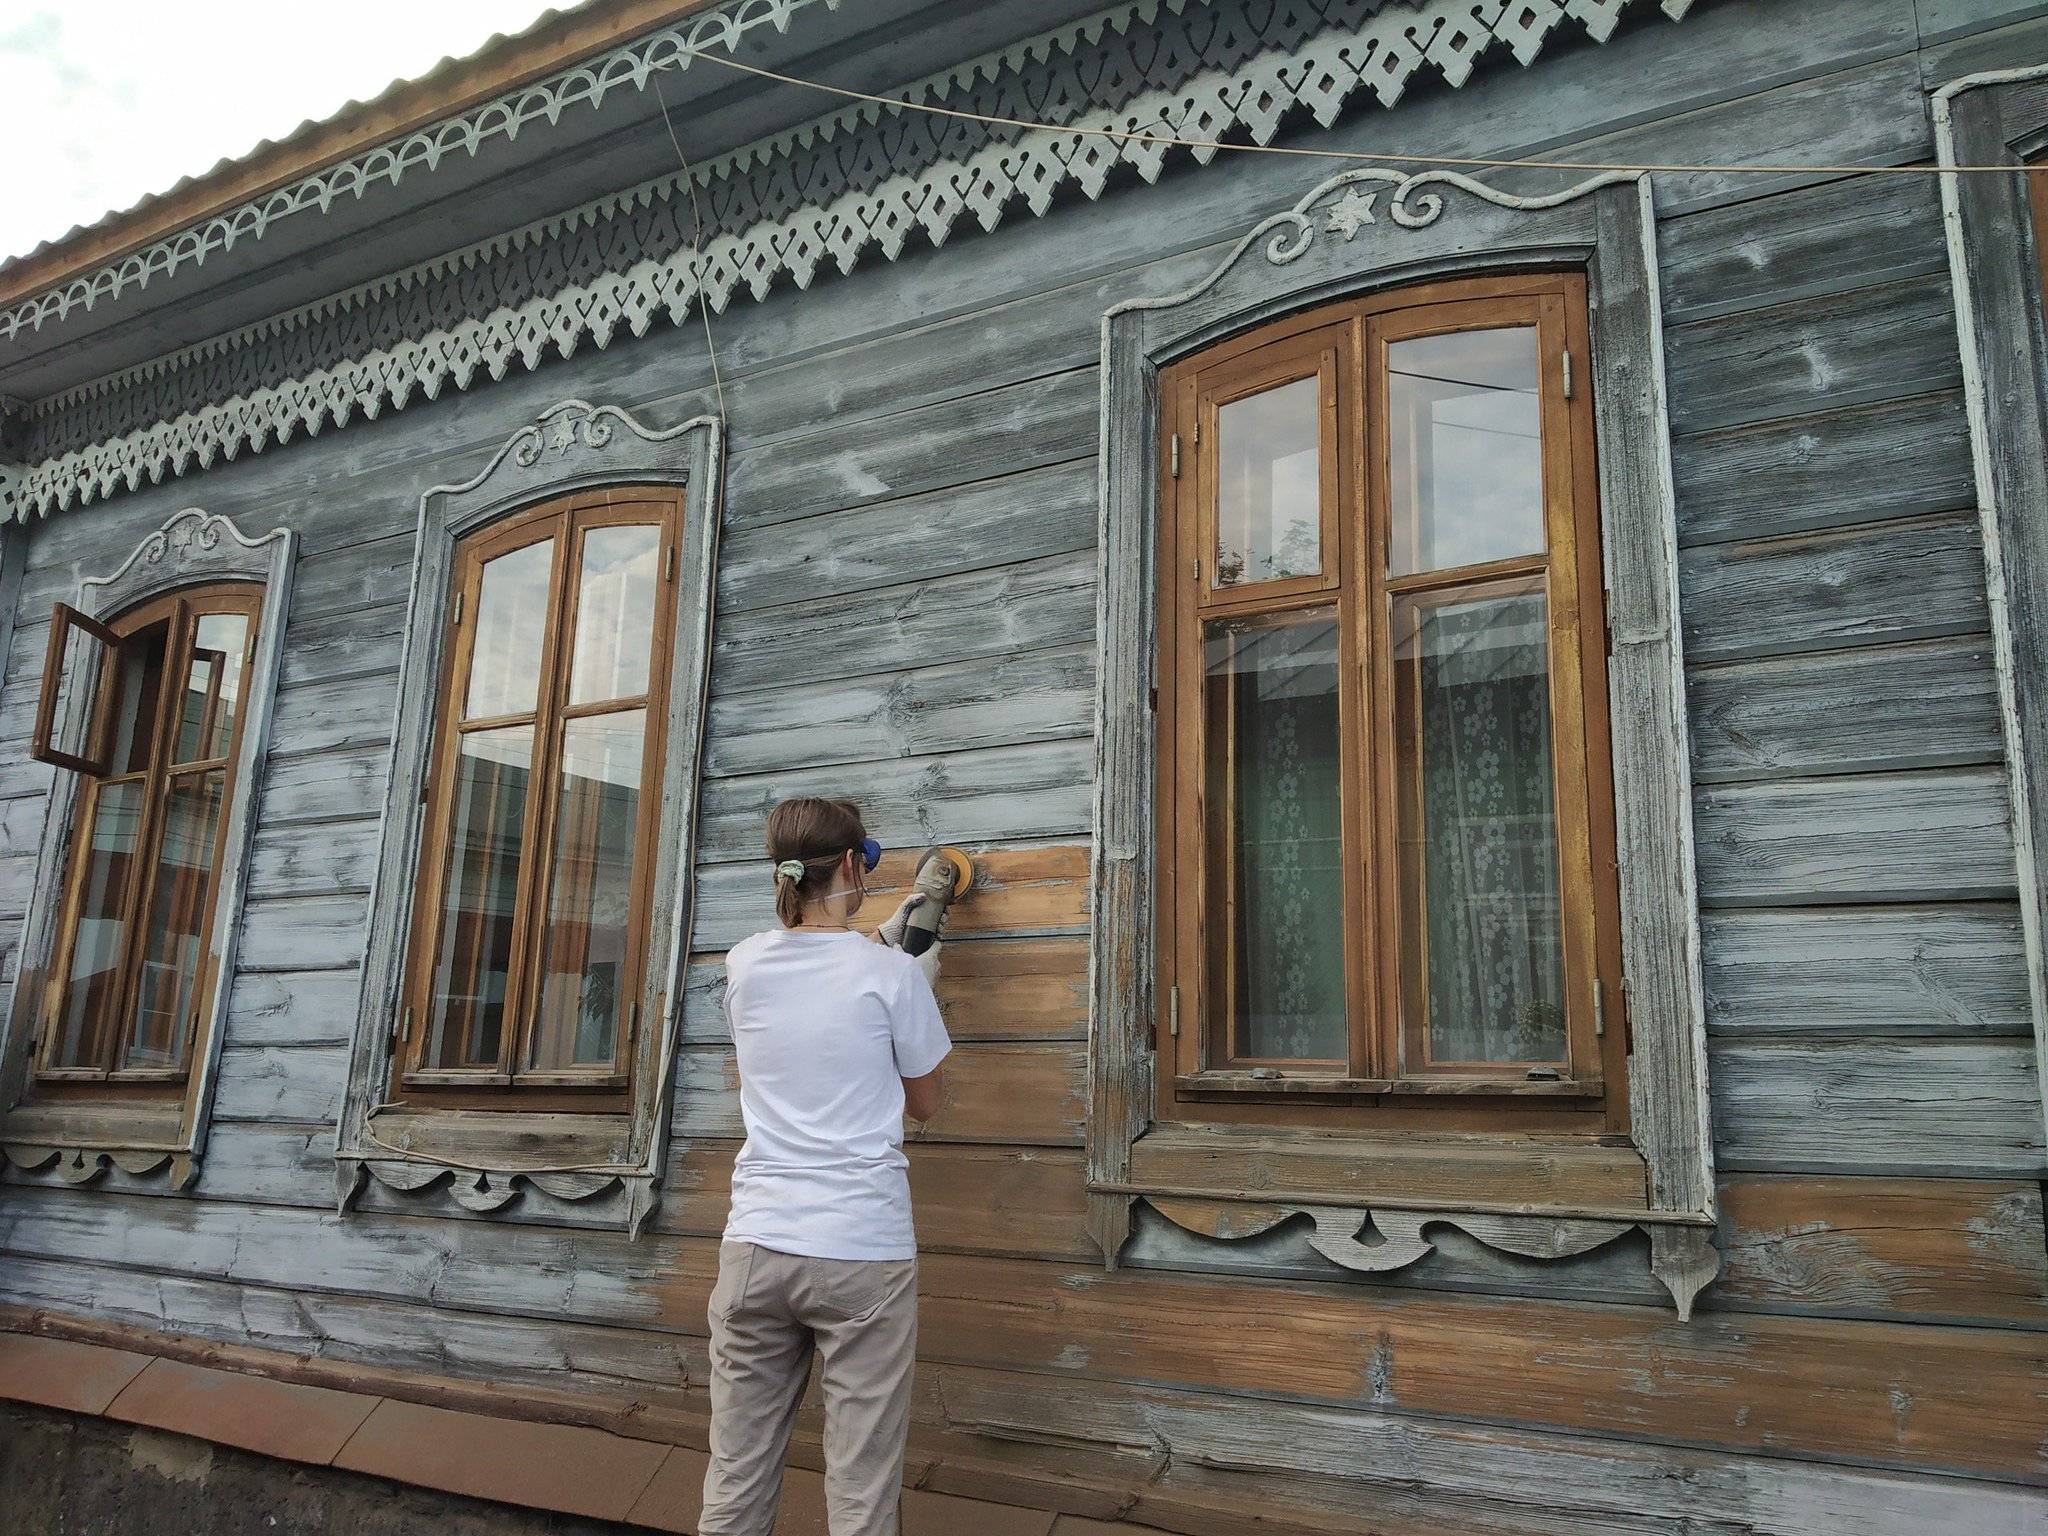 Ремонт деревянного дома своими руками, обновление стен, кровли, реставрация венцов